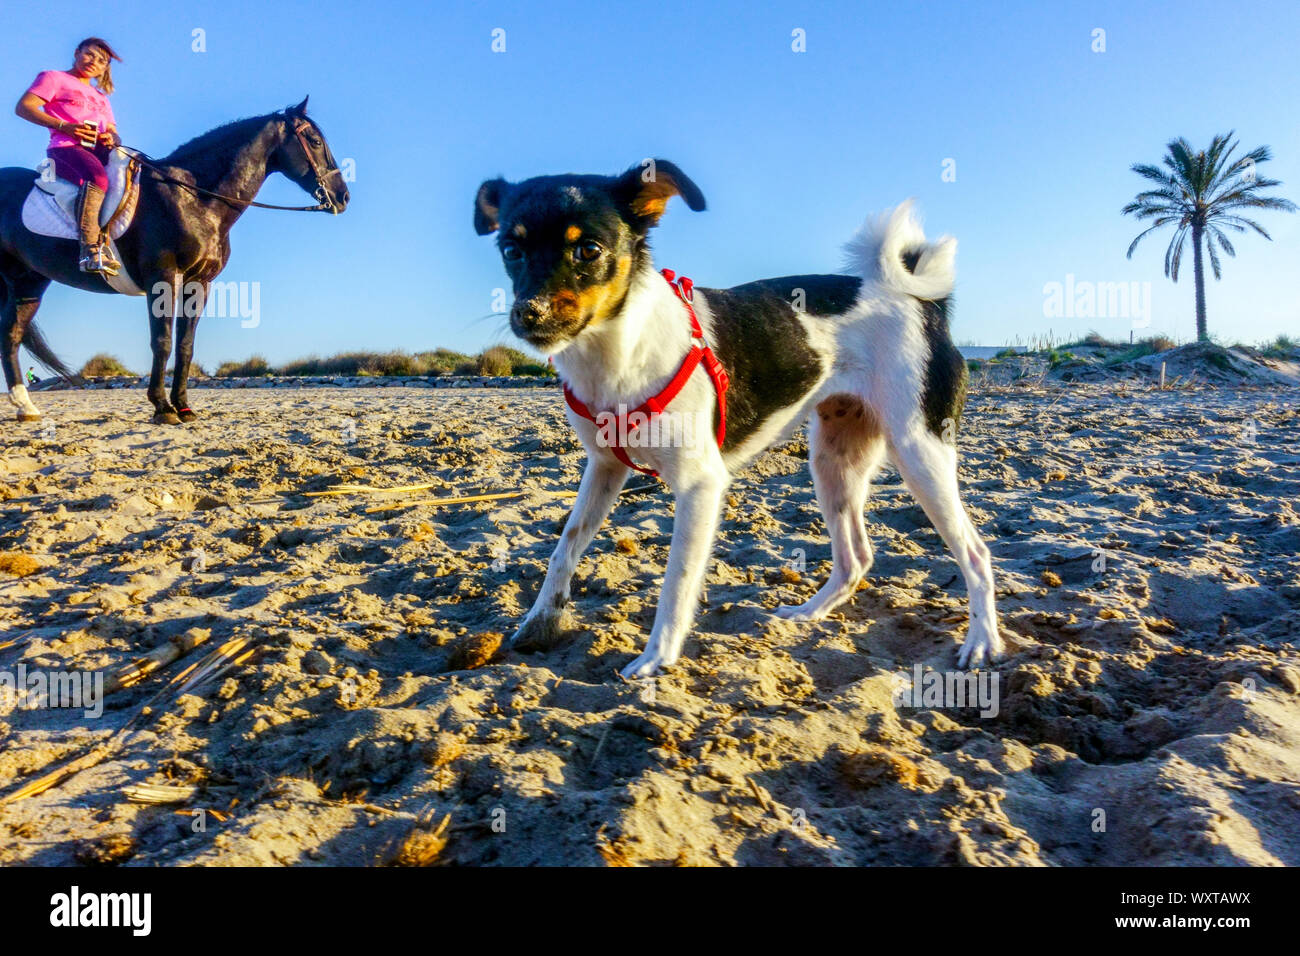 Kleiner Welpe Hund auf einem Strandspaziergang und Frau zu Pferd Reiten Valencia Region Spanien Strand Stockfoto